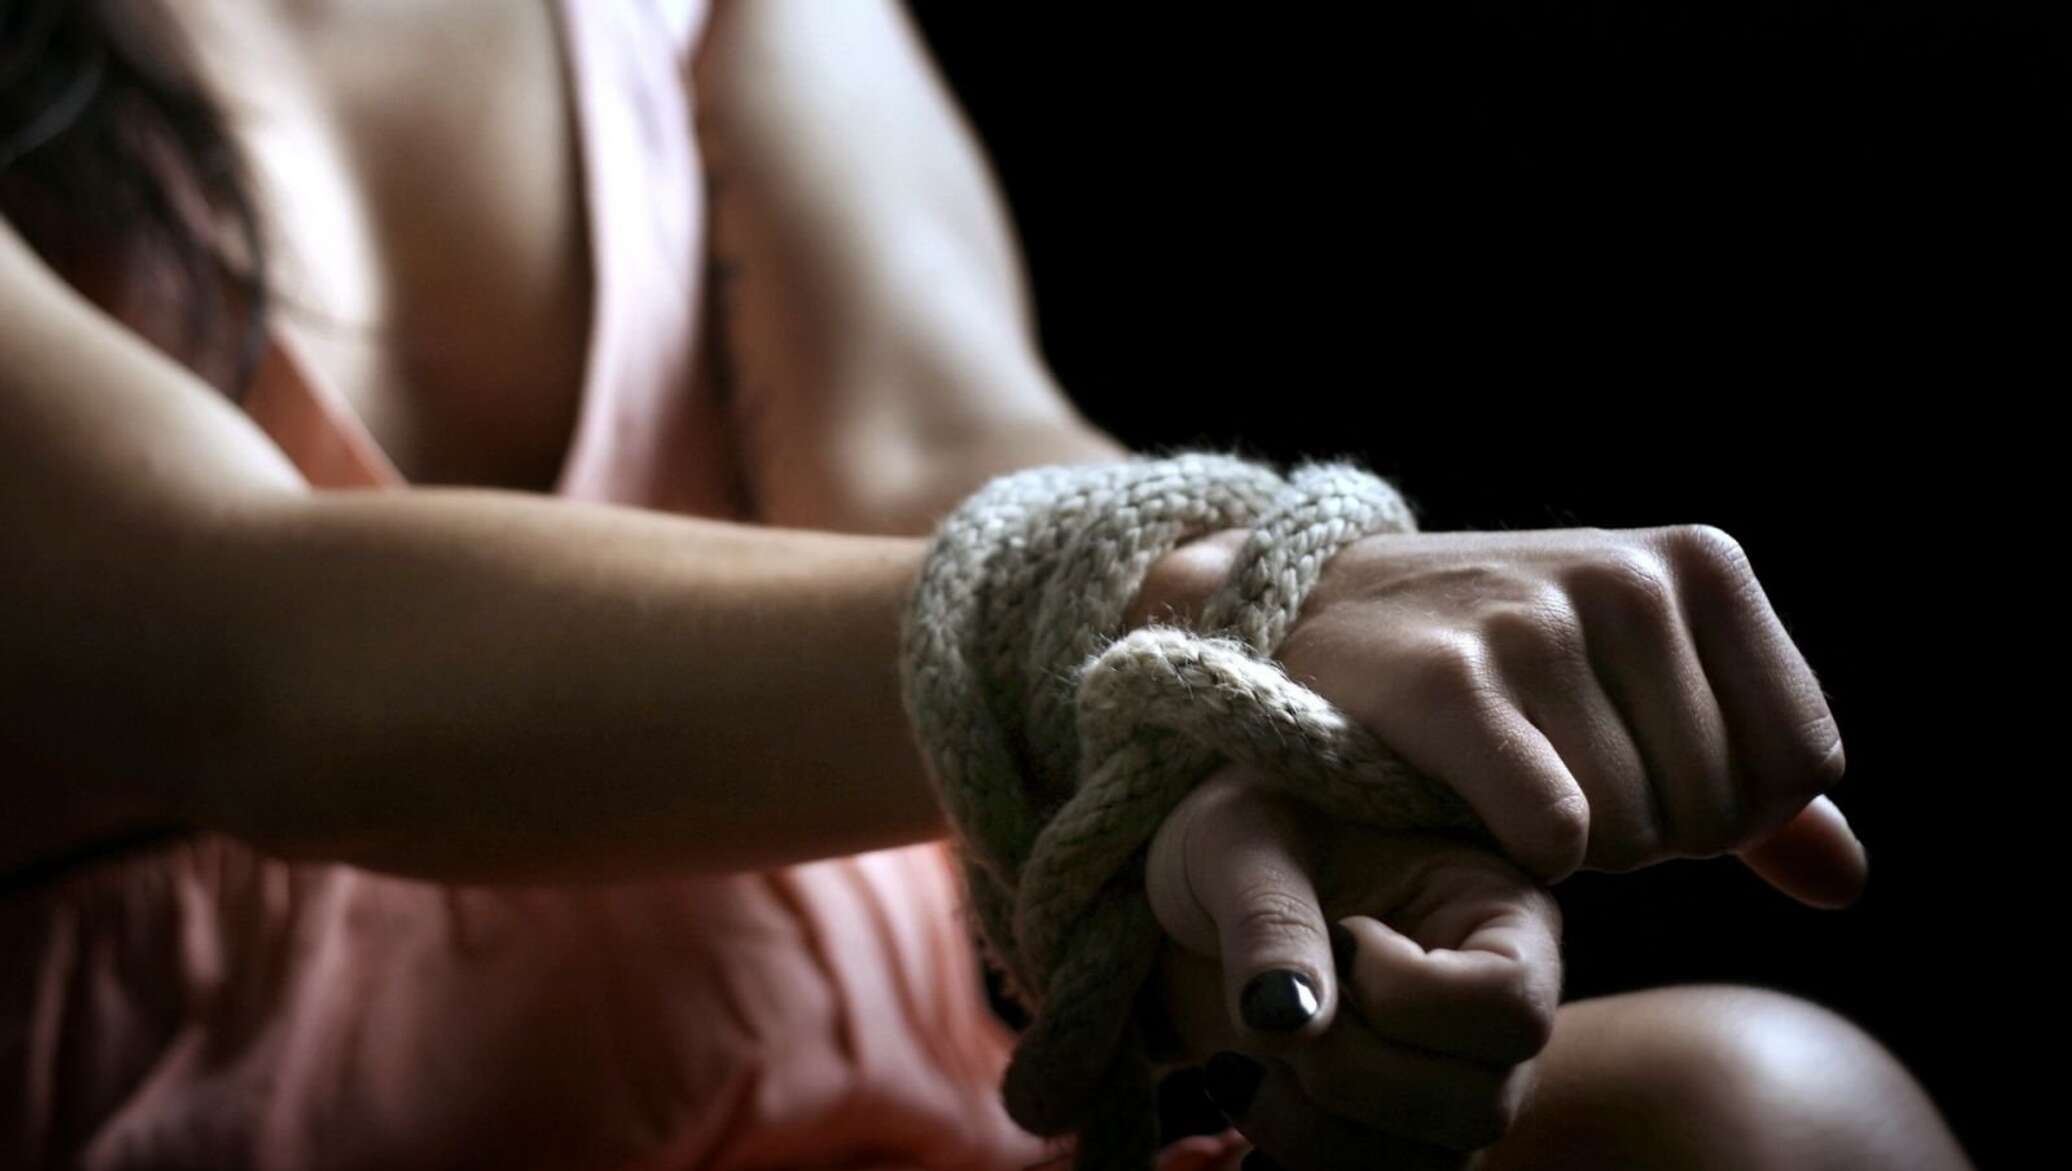 Женщина связала другую женщину. Связанные руки. Девушка со связанными руками. Руки связаны. Связанные руки девушки.